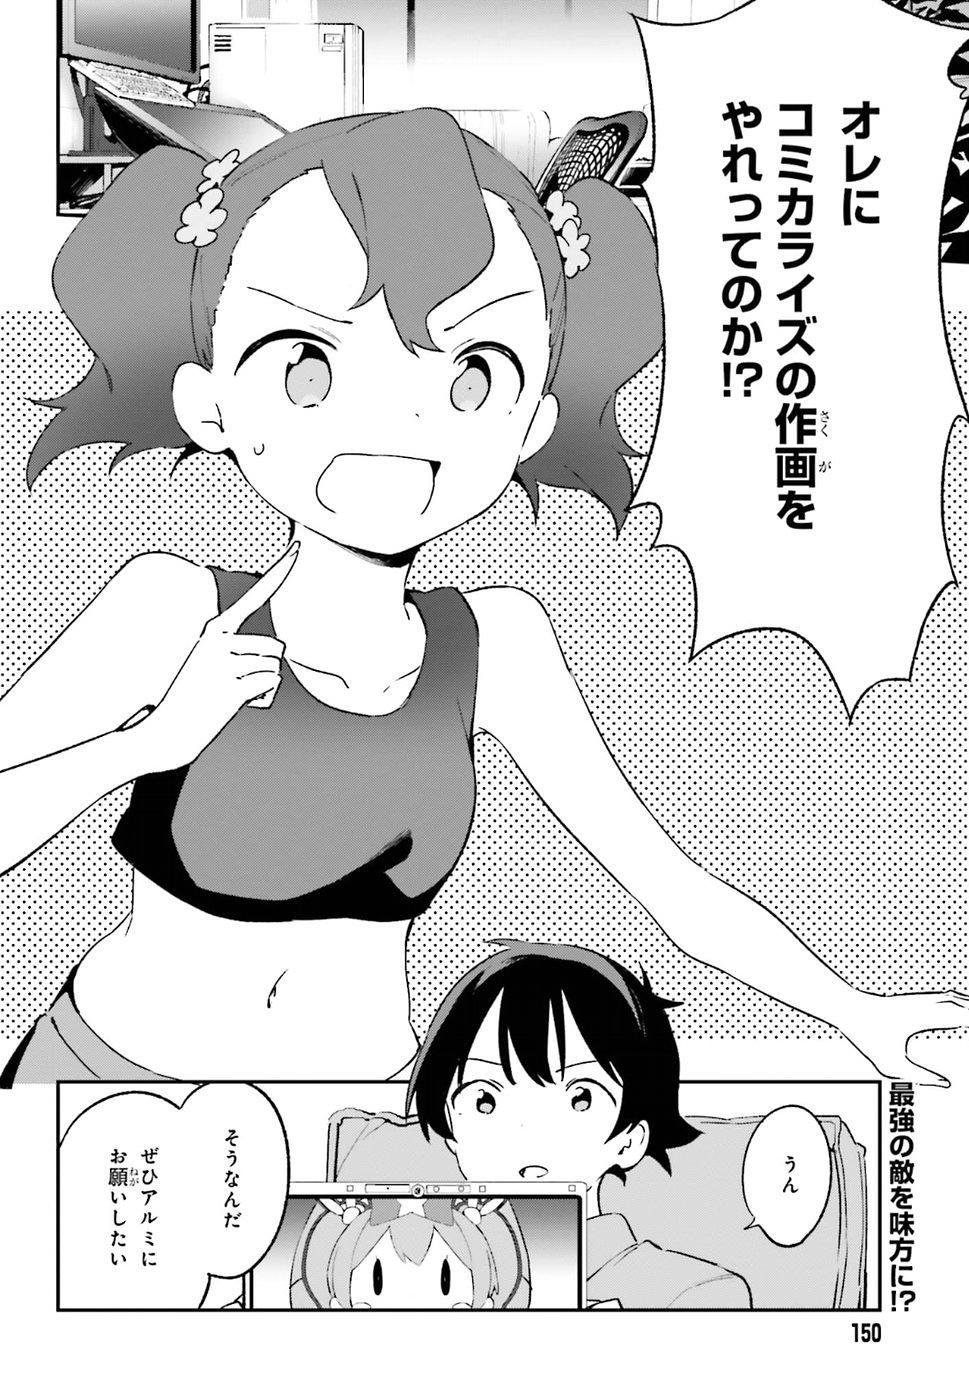 Ero Manga Sensei - Chapter 48 - Page 2